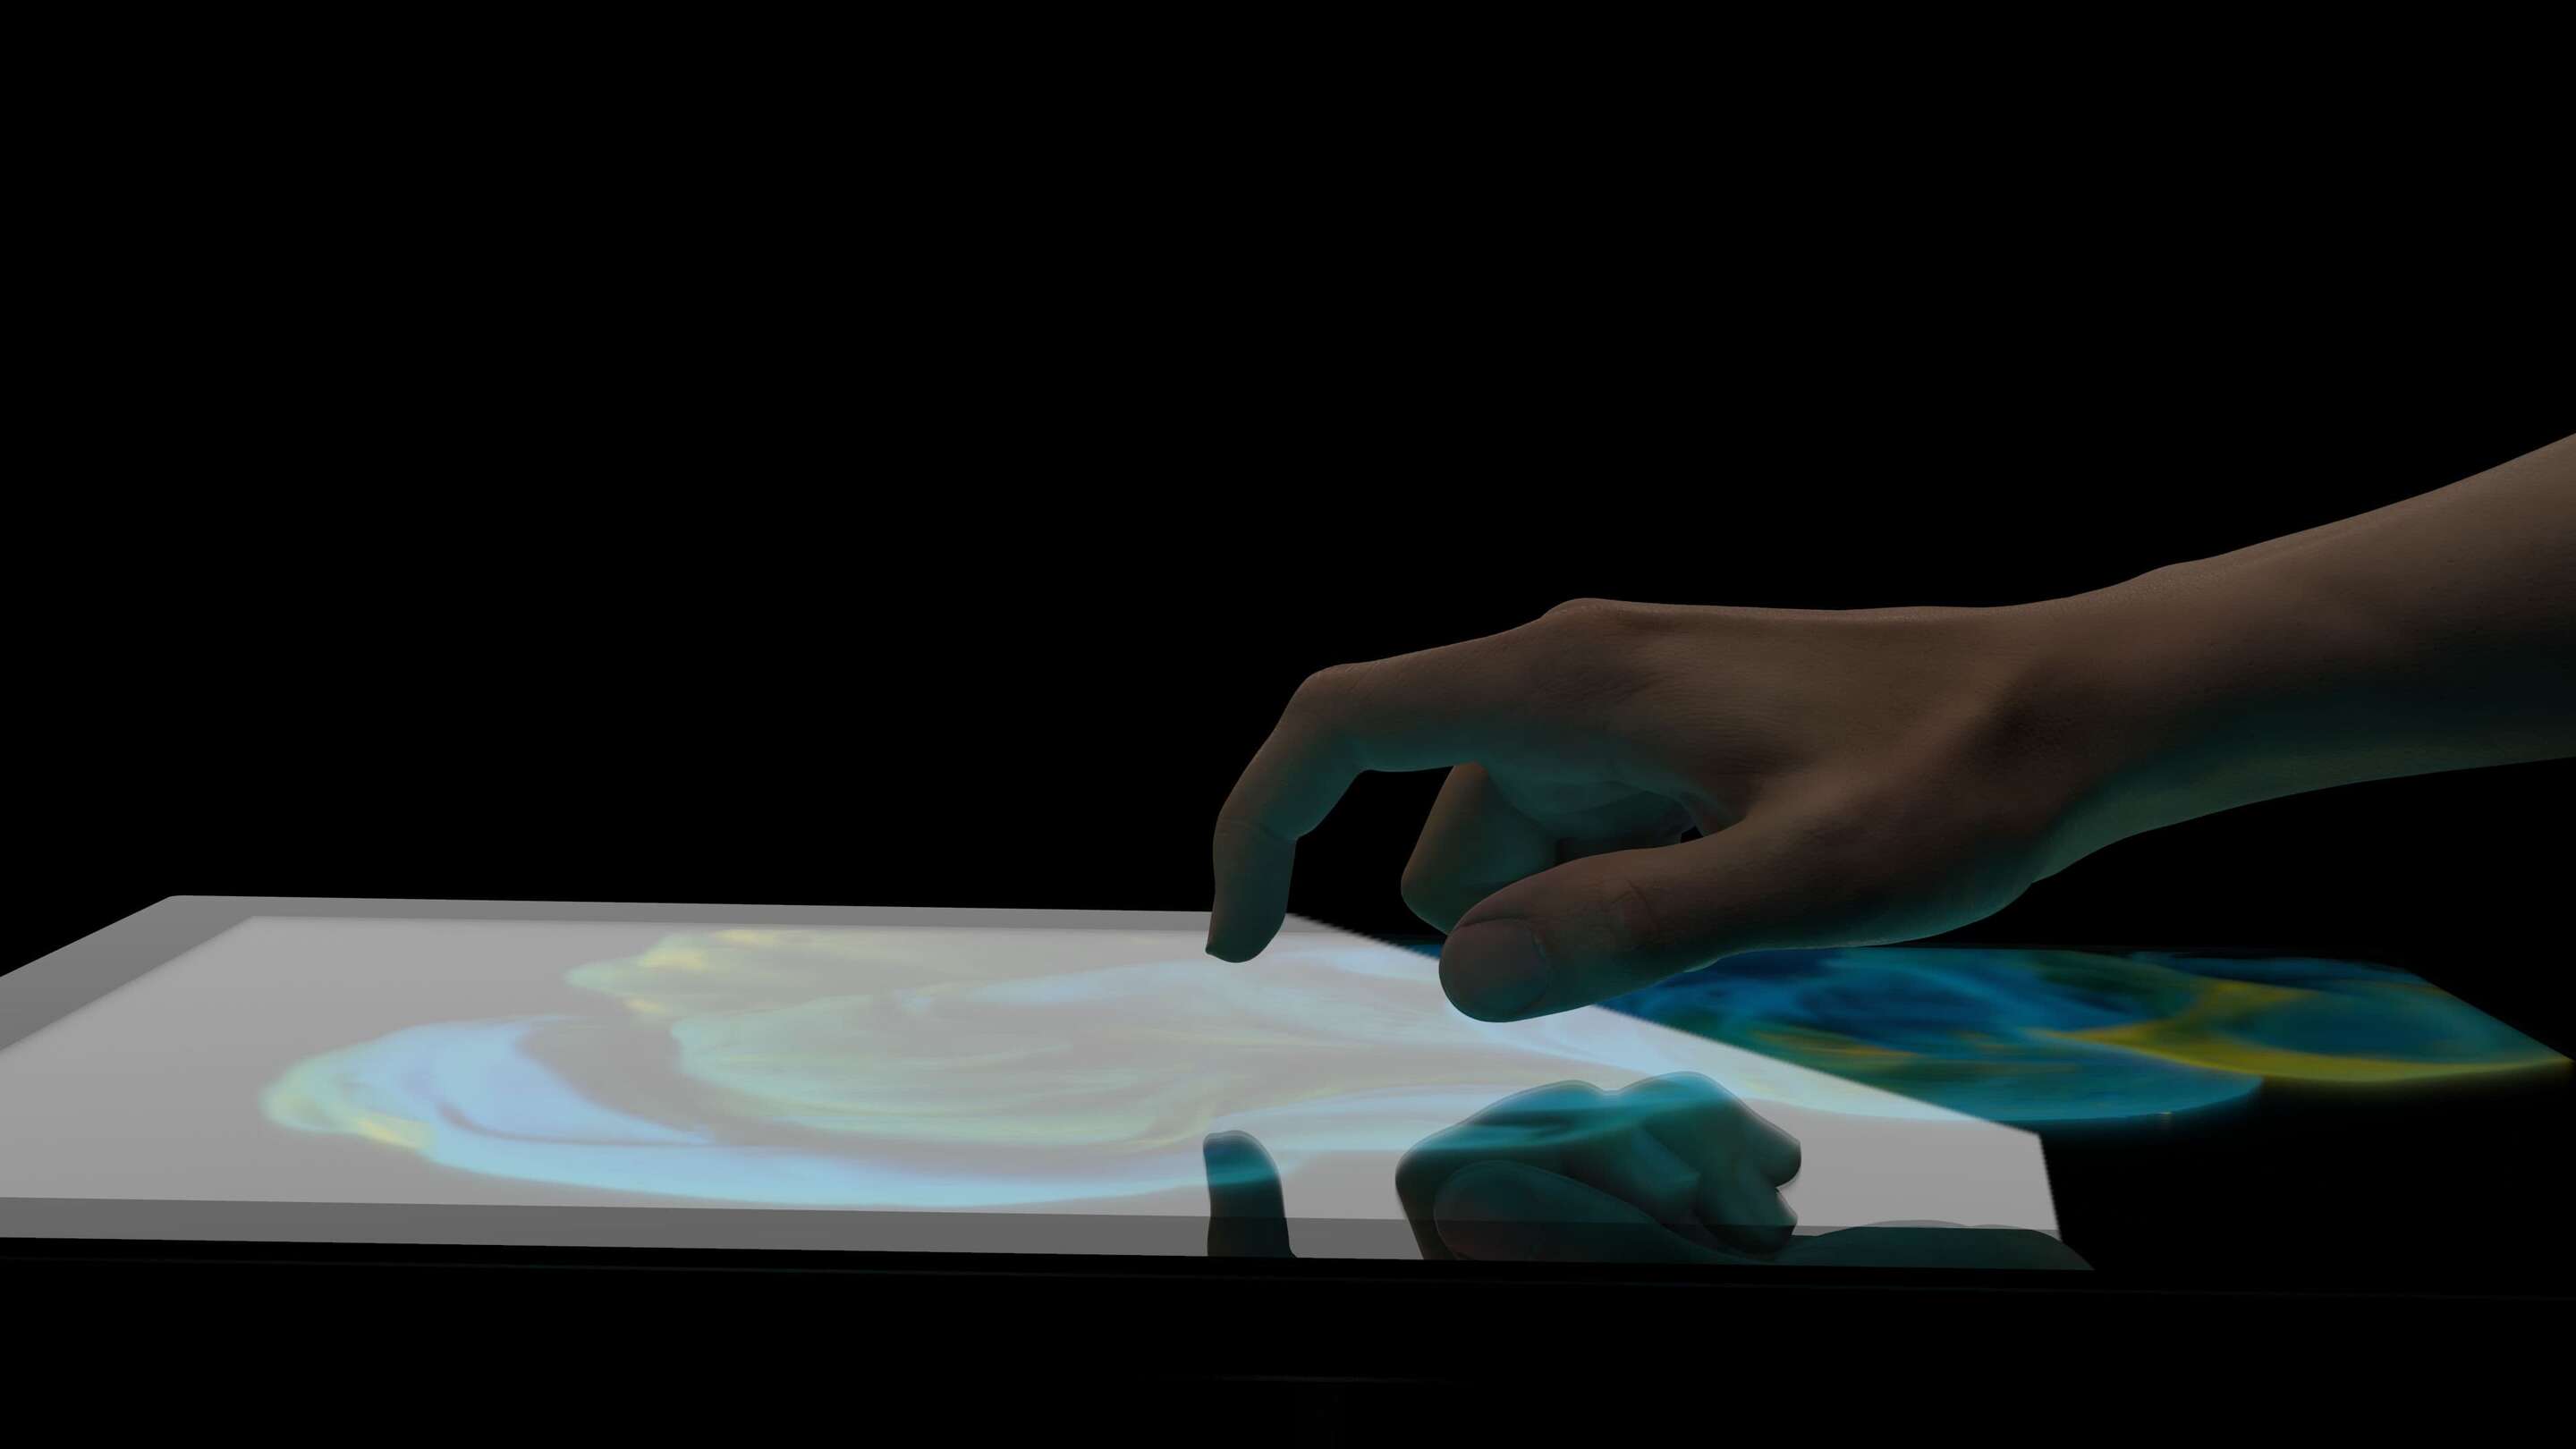 Design - Usabilidade de uma mão tocando uma tela sensível ao toque